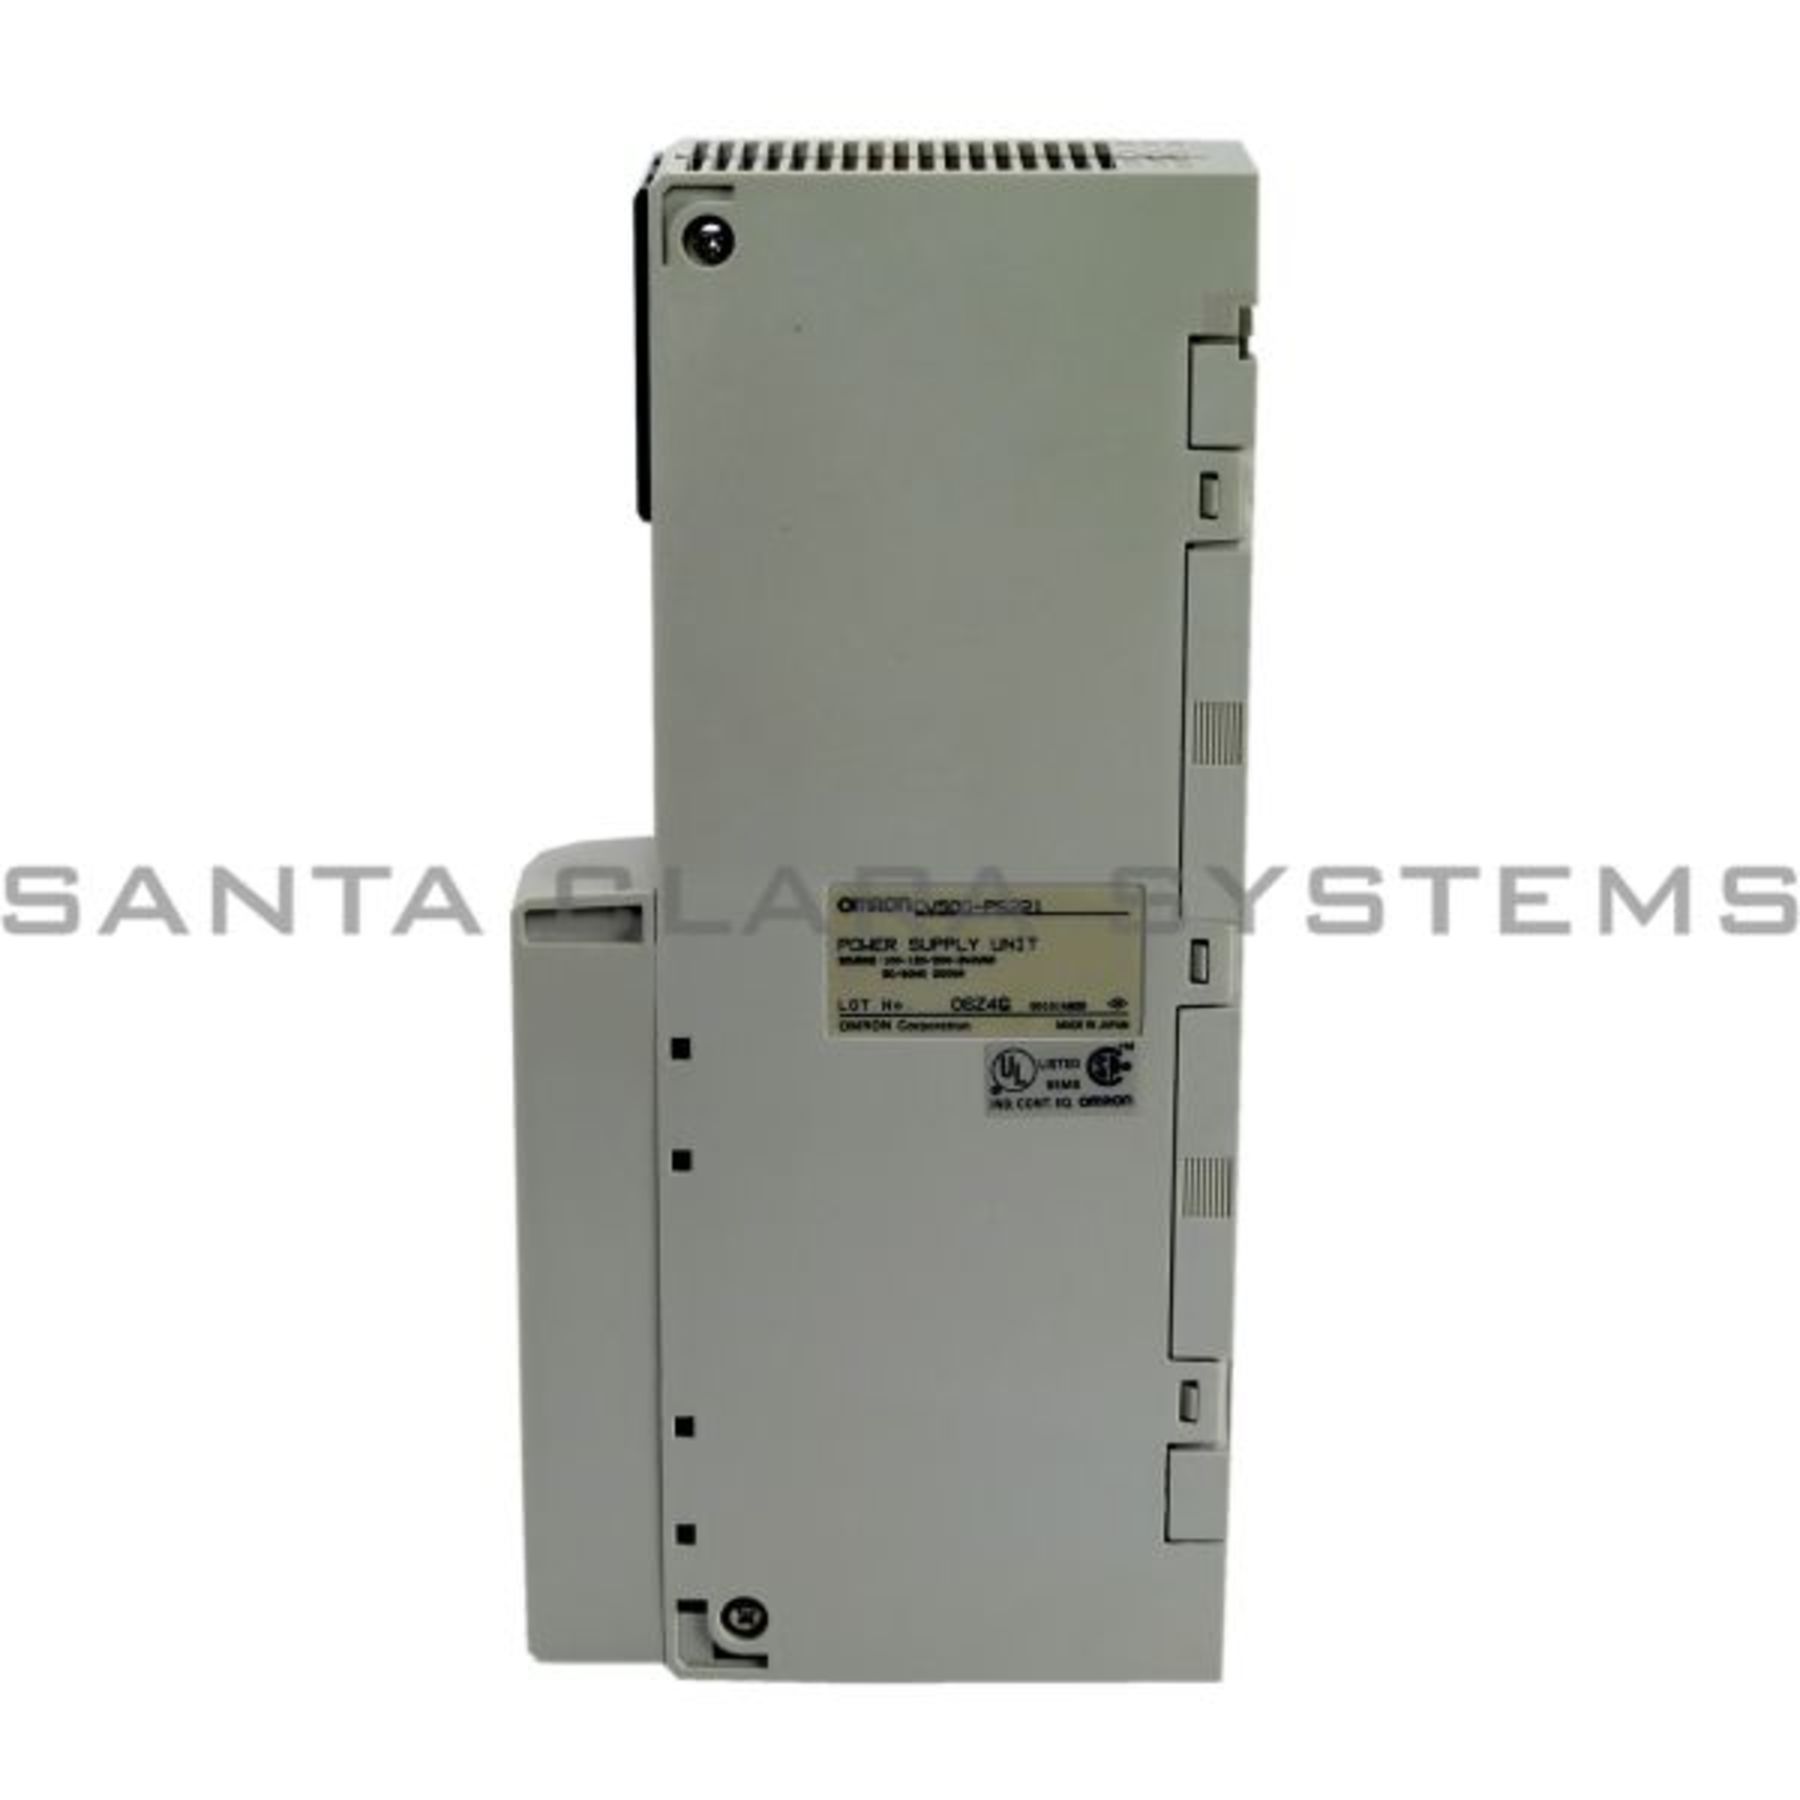 CV500-PS221 Omron Power Supply 100/240 VAC Input - Santa Clara Systems